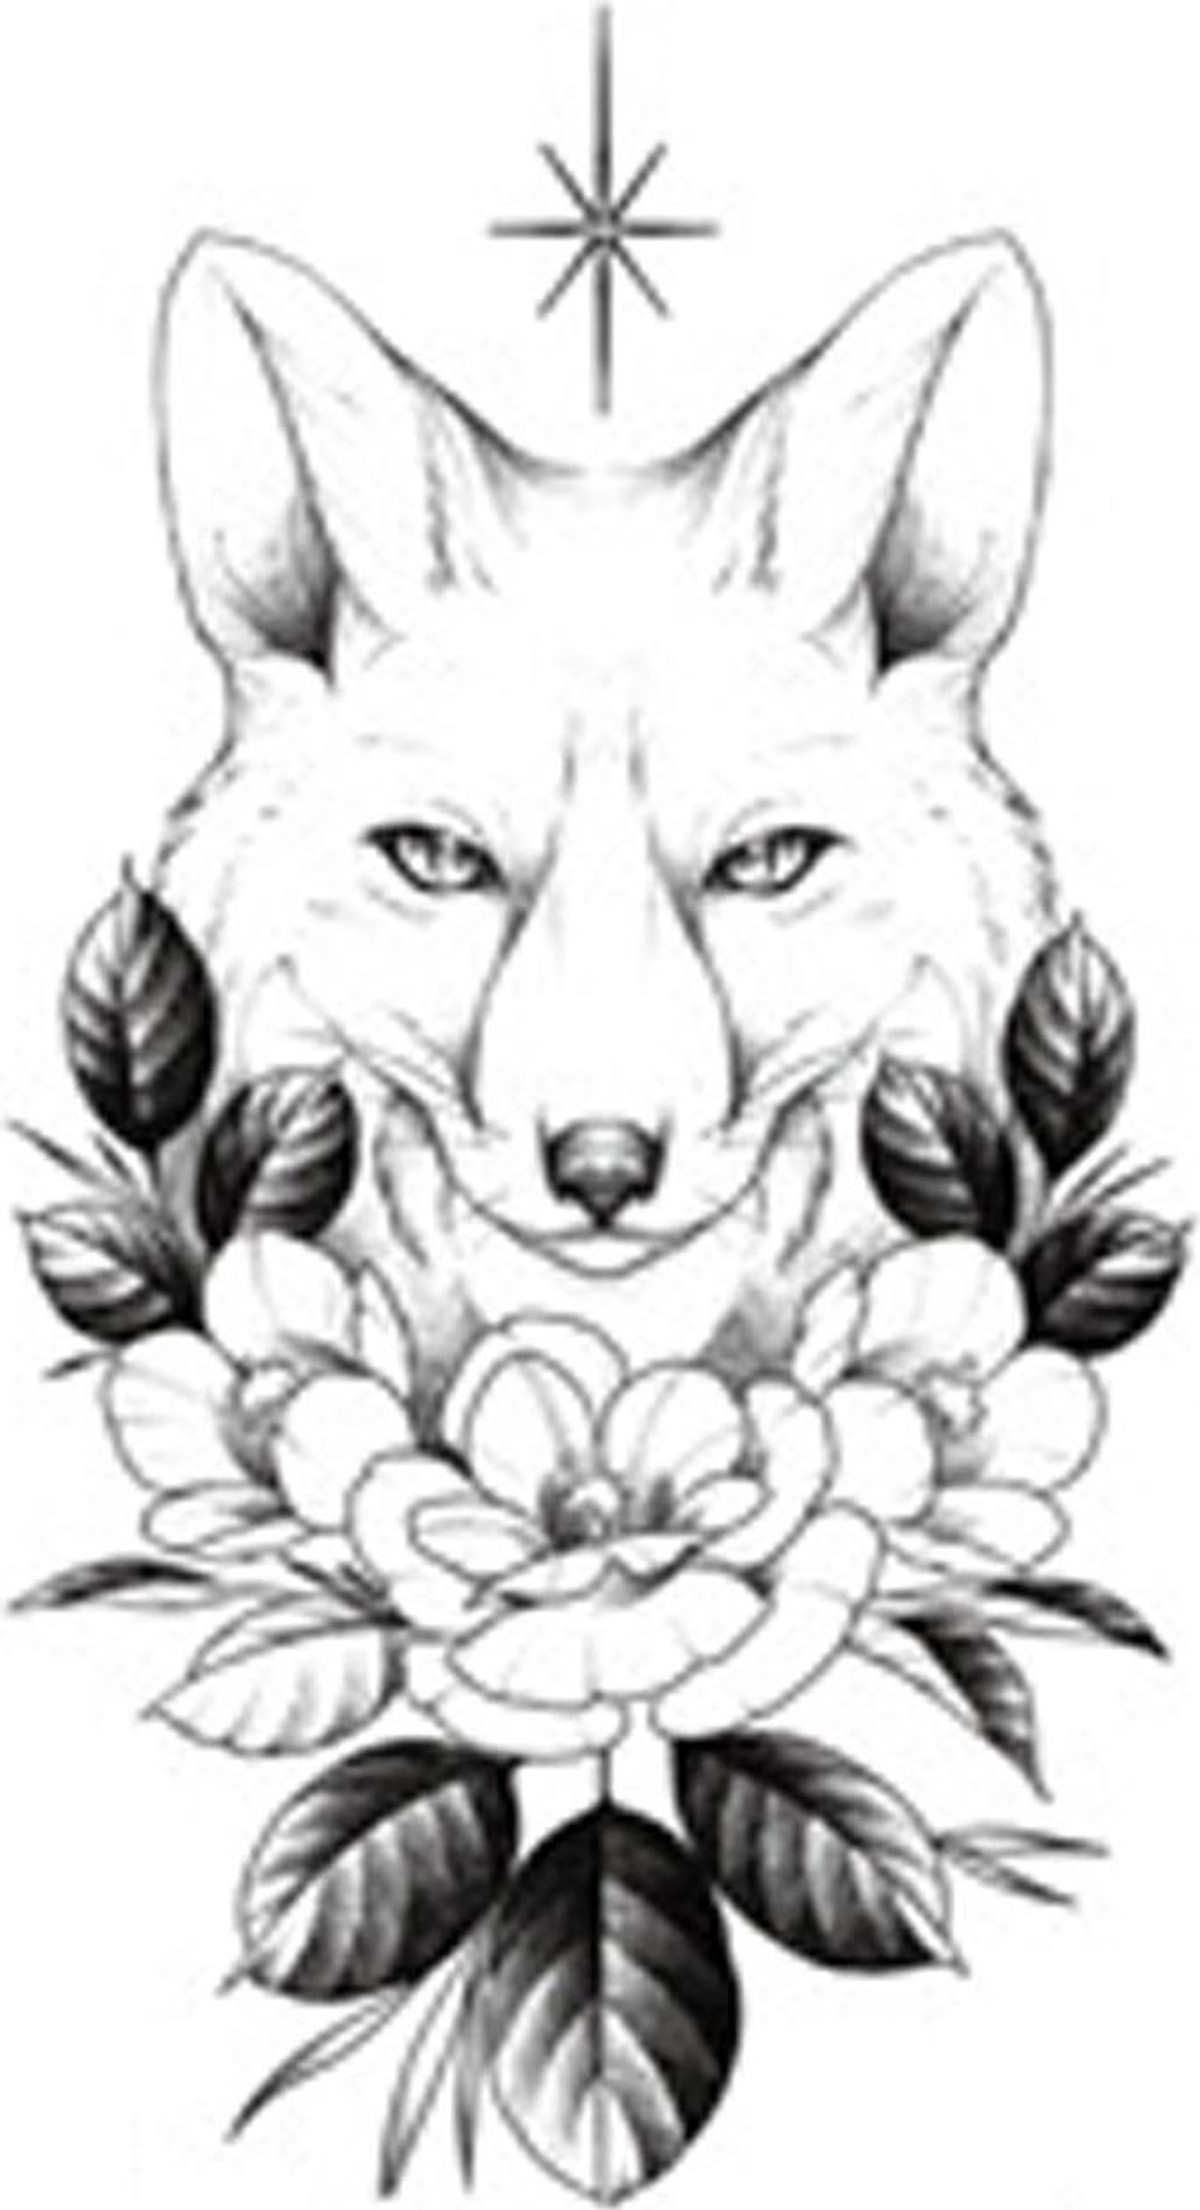 Hình xăm bông hoa sói sẽ giúp bạn thể hiện tính cách mạnh mẽ, độc lập và tinh tế. Hãy cùng chiêm ngưỡng những mẫu hình xăm bông hoa sói đầy sắc màu và nghệ thuật này nhé!